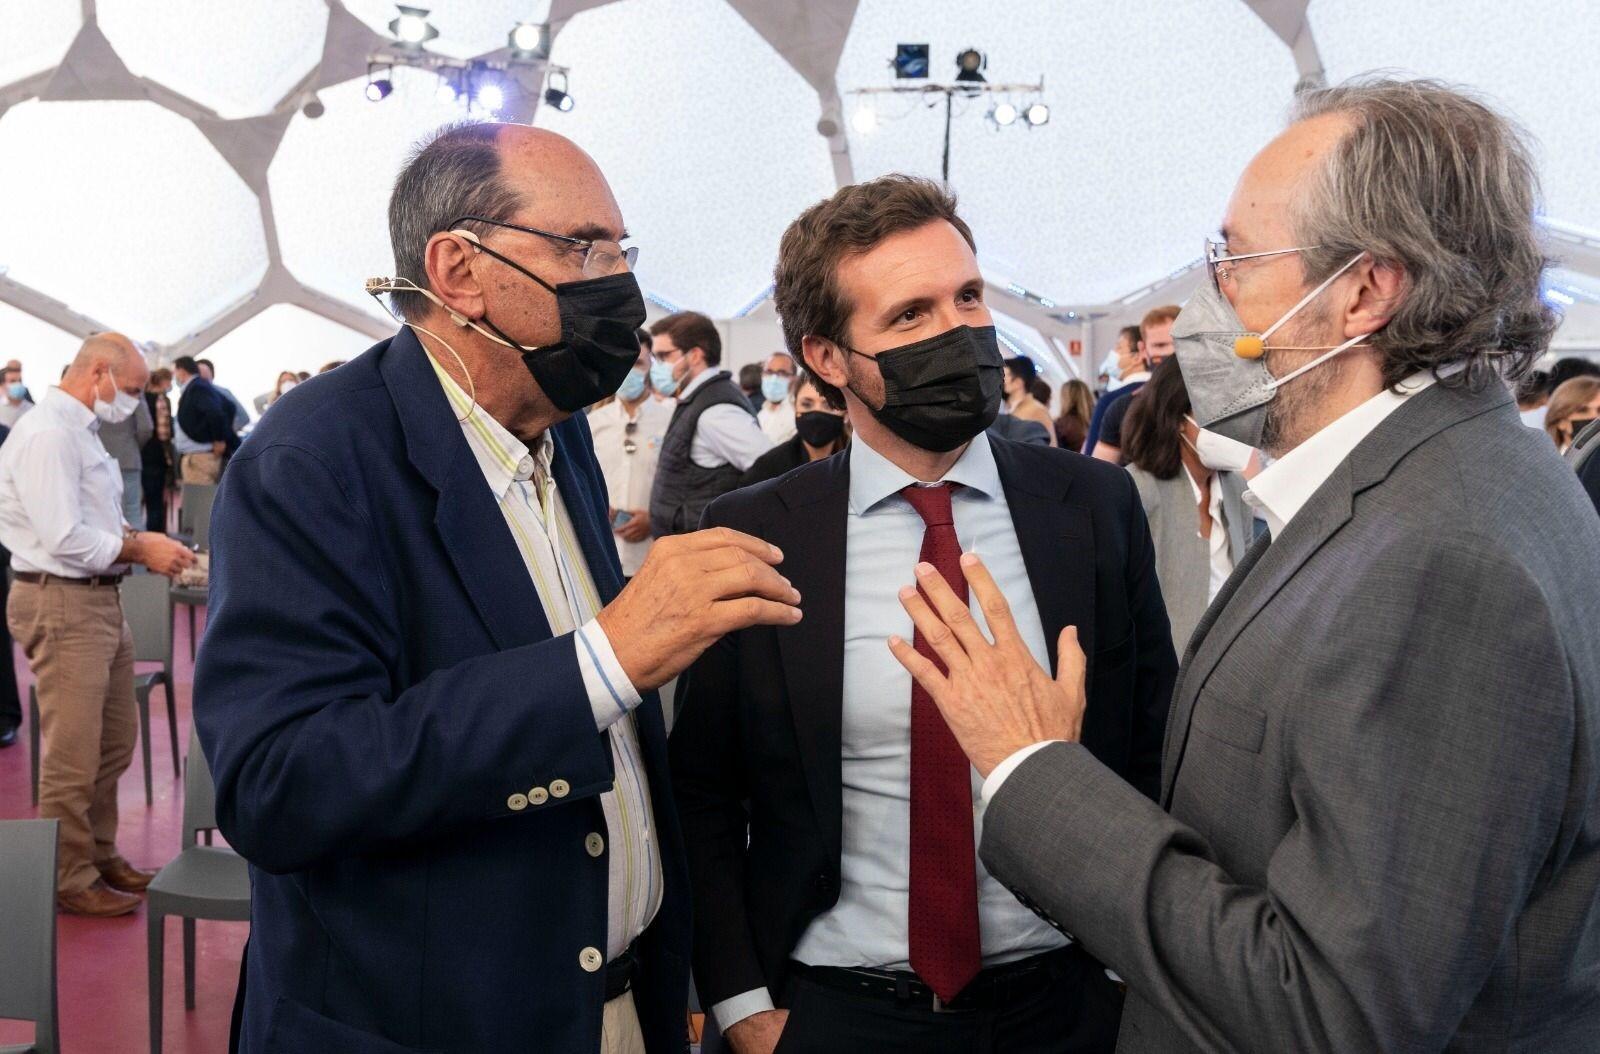 De izquierda a derecha: Alejo Vidal-Quadras, Pablo Casado y Juan Carlos Girauta. Fuente: Europa Press.